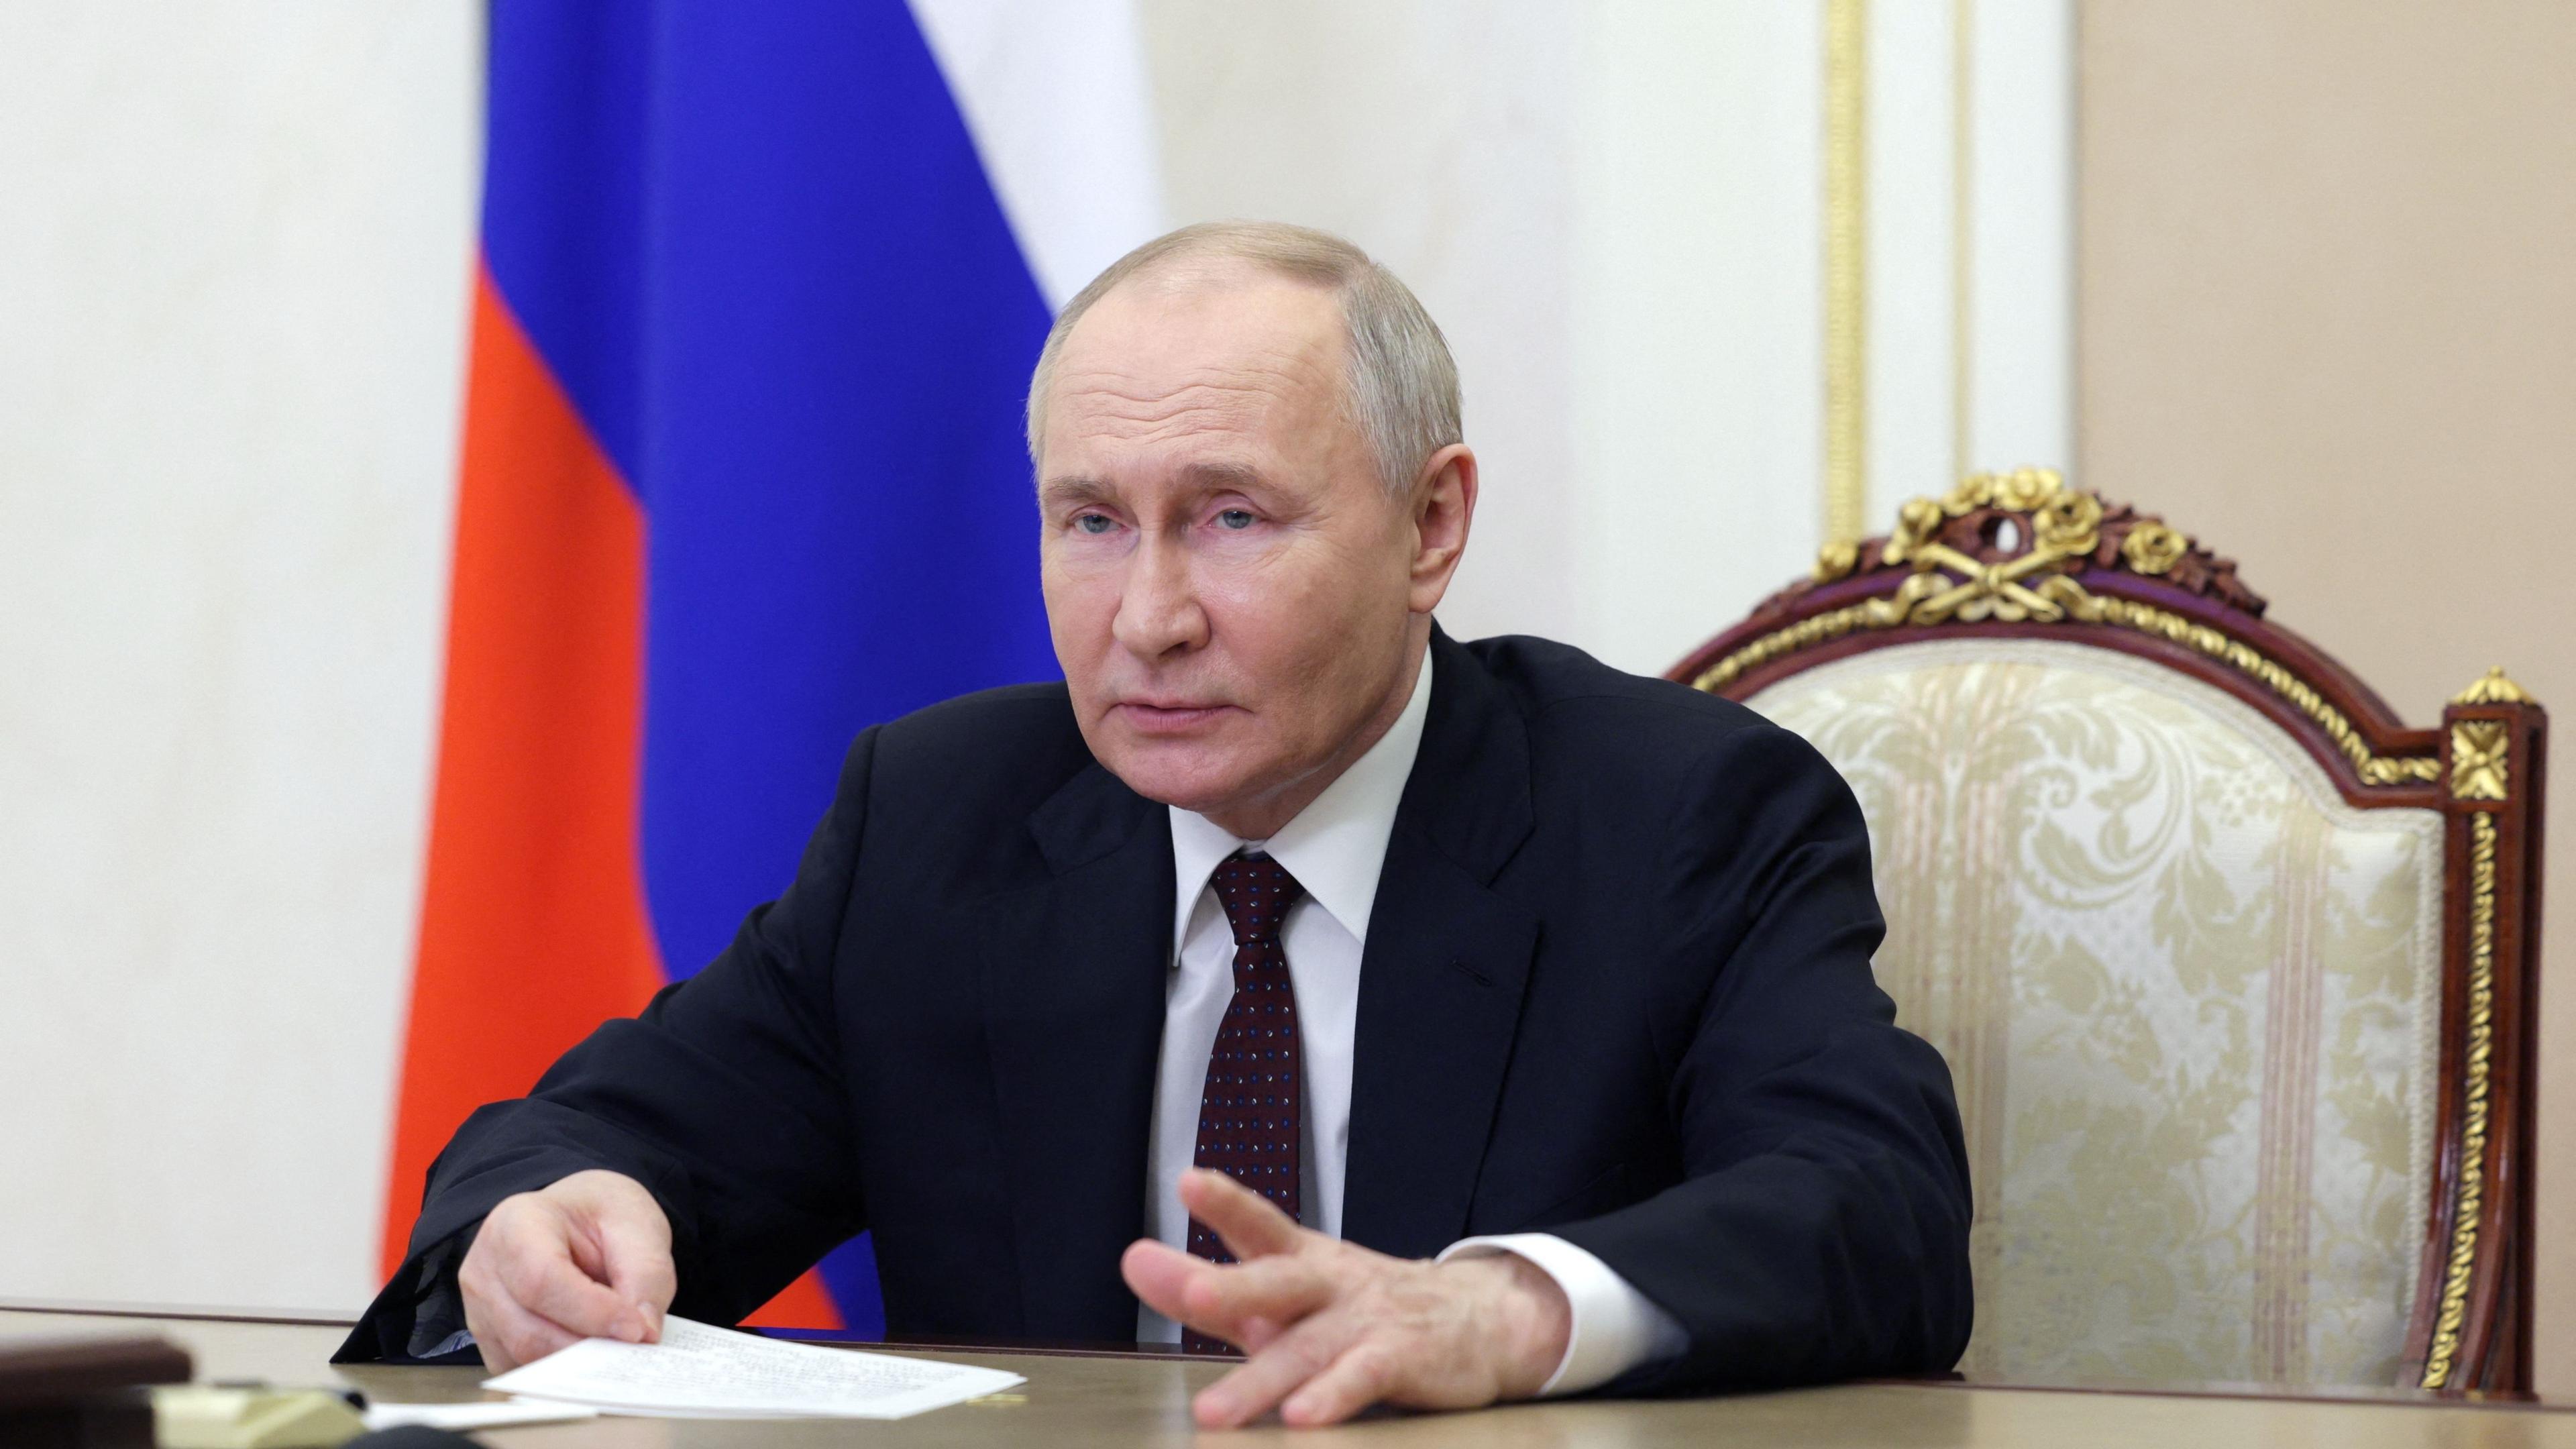 Der russische Präsident Wladimir Putin verkündet die Botschaft, dass sein Land die westlichen Sanktionen gut verkraften würde, Doch dem ist nicht so.